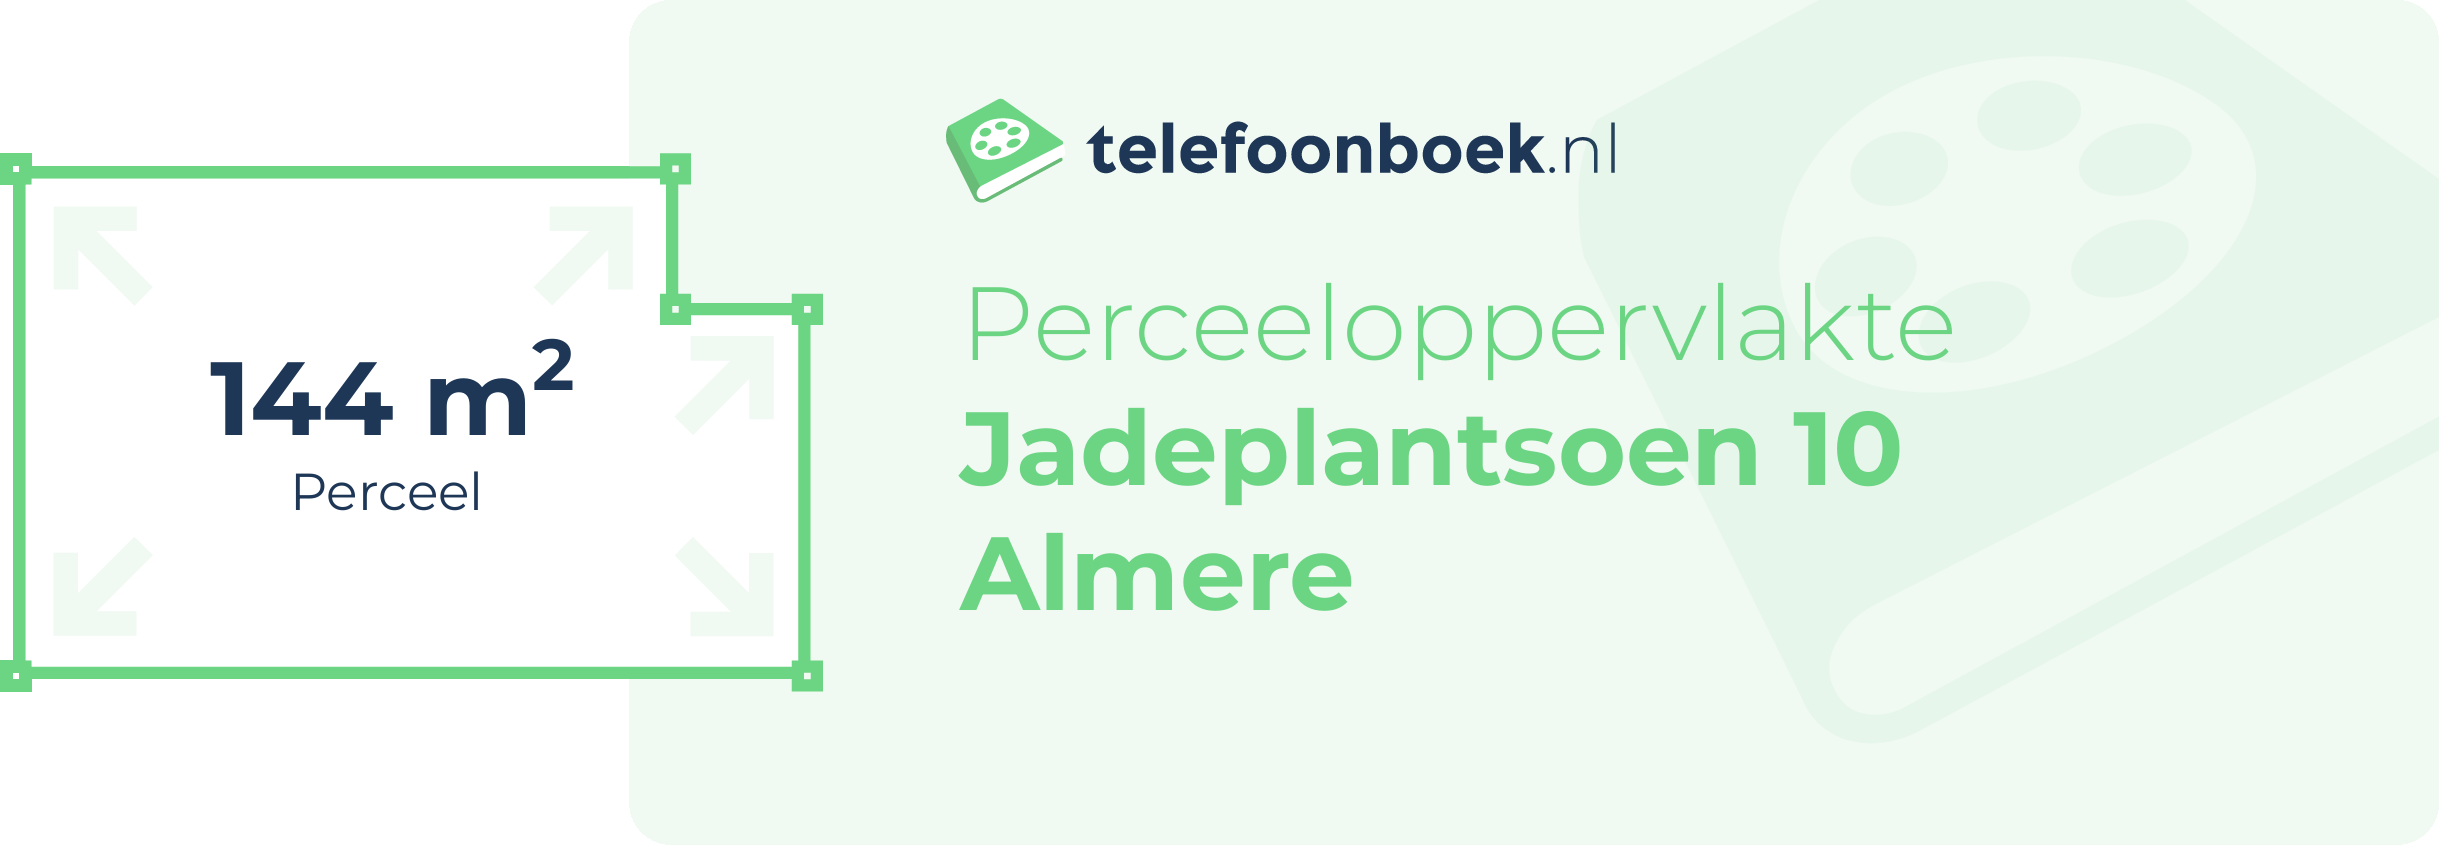 Perceeloppervlakte Jadeplantsoen 10 Almere